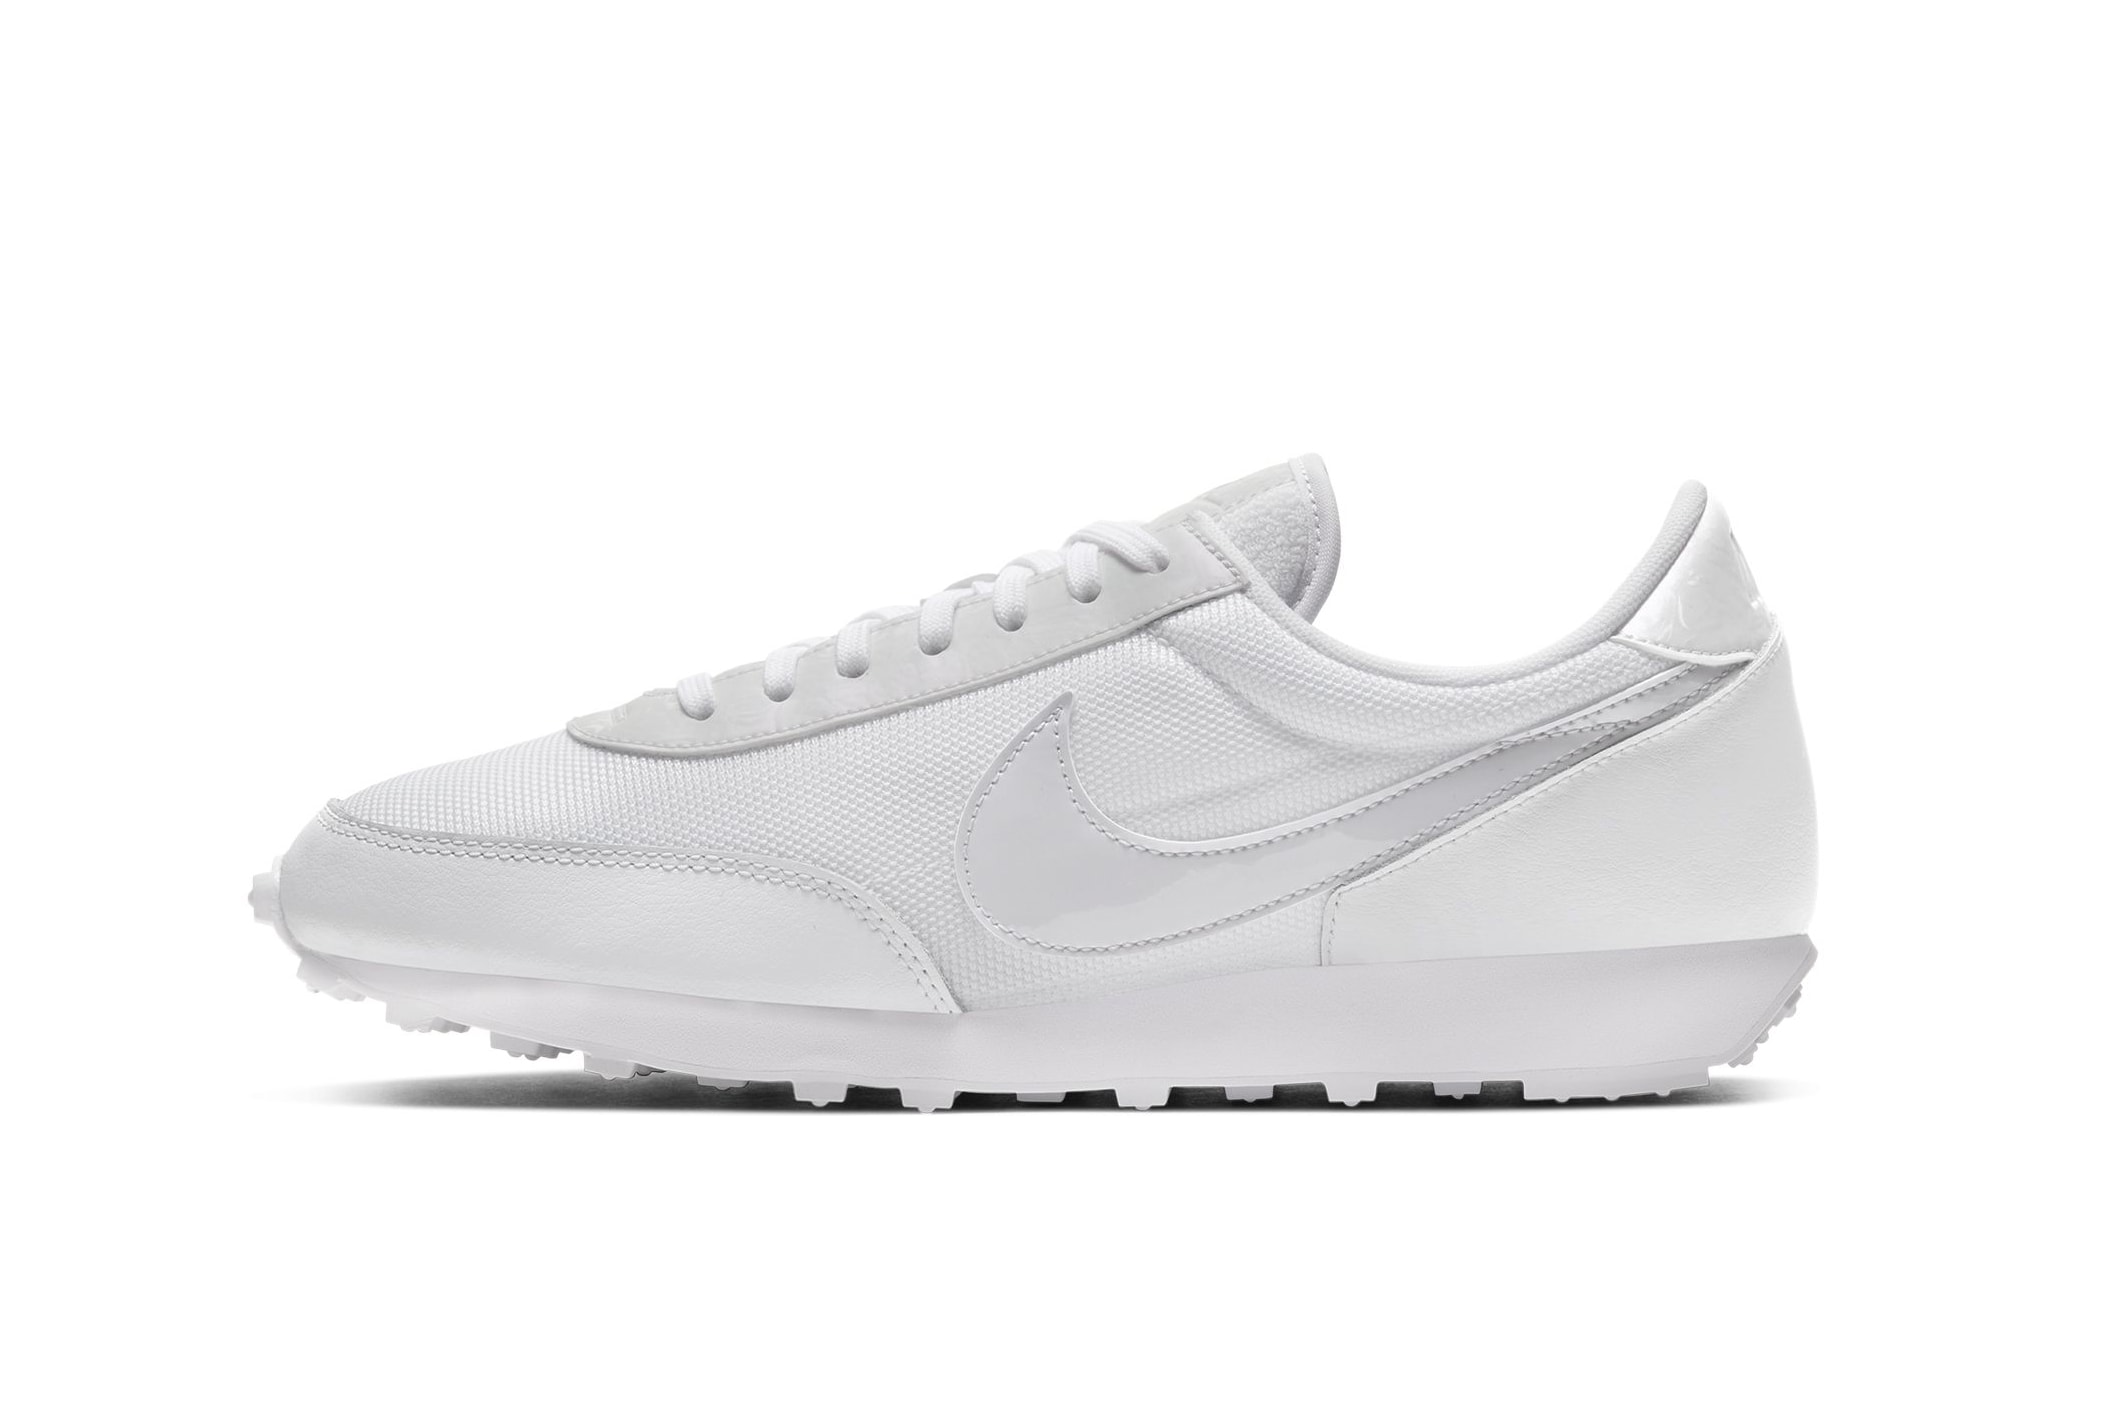 Nike Daybreak White/Barely Grape Sneaker Release Minimal Retro Footwear